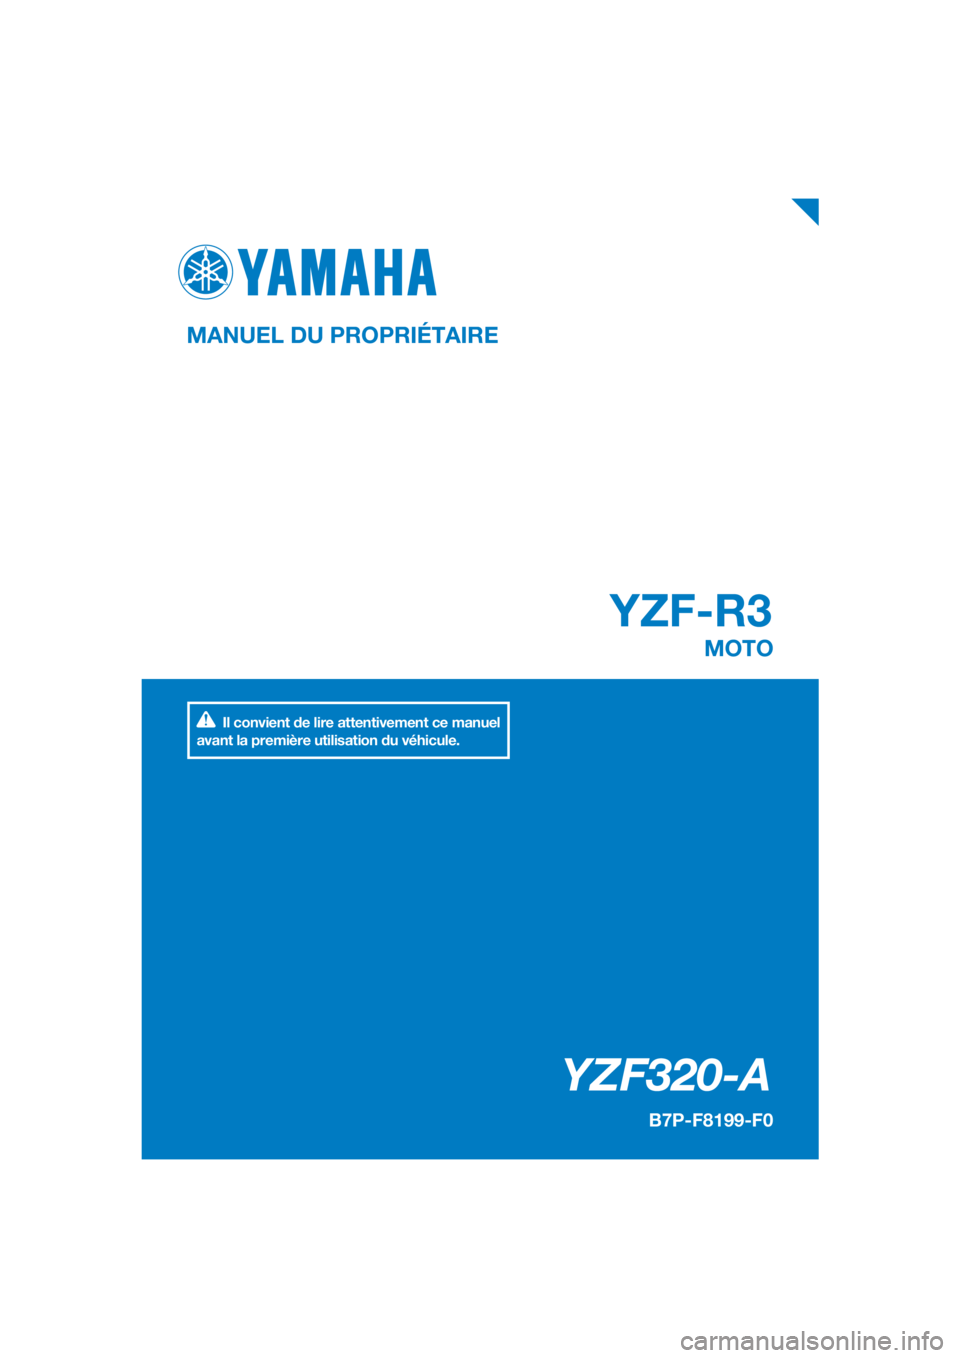 YAMAHA YZF-R3 2019  Notices Demploi (in French) DIC183
YZF-R3
YZF320-A
MANUEL DU PROPRIÉTAIRE
B7P-F8199-F0
MOTO
Il convient de lire attentivement ce manuel 
avant la première utilisation du véhicule.
[French  (F)] 